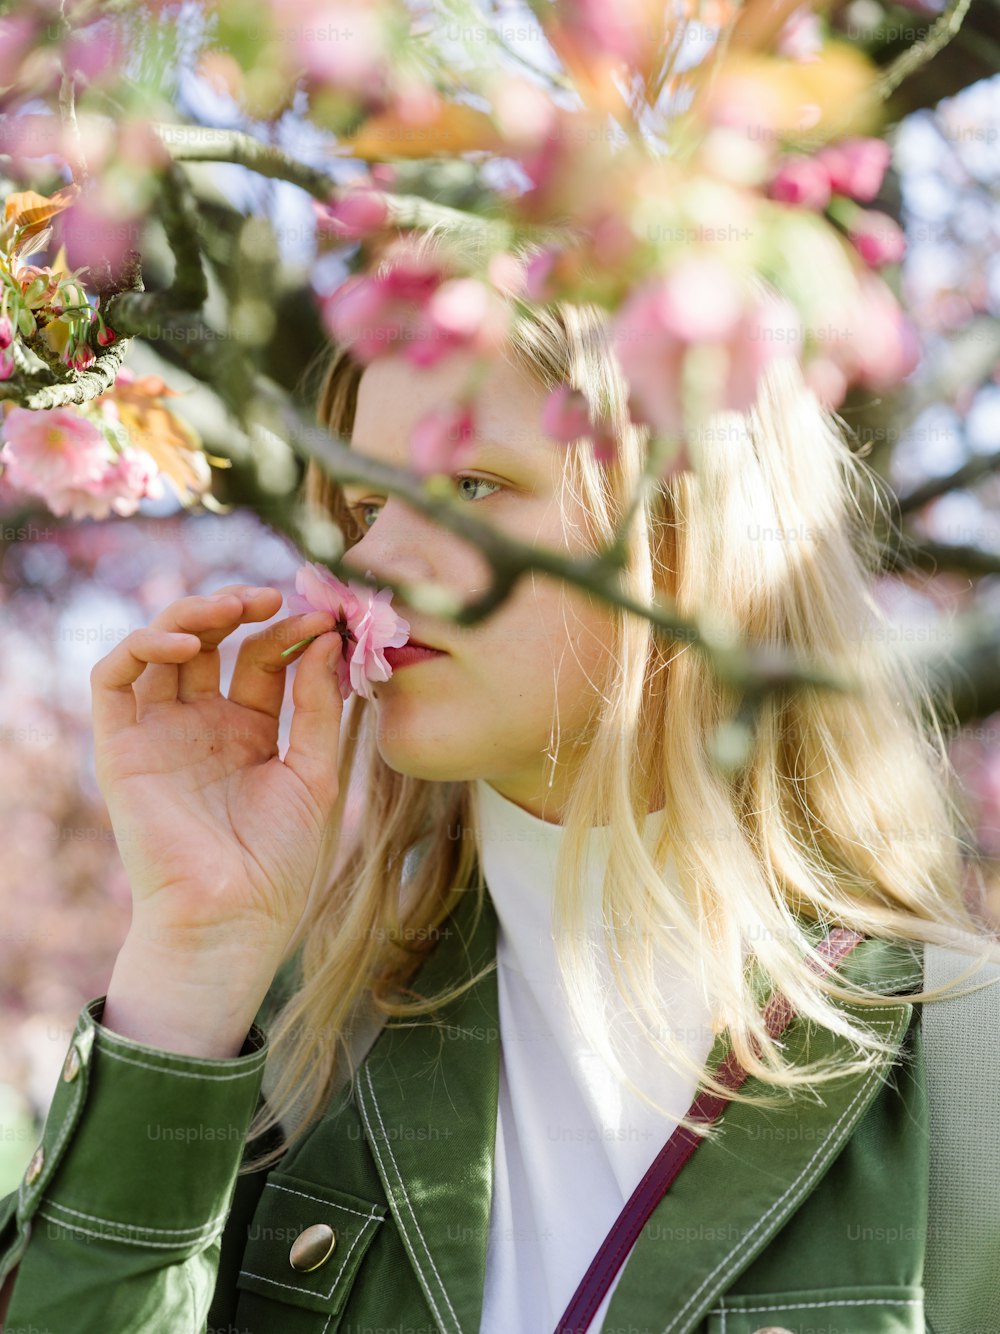 Une femme en veste verte sentant une fleur